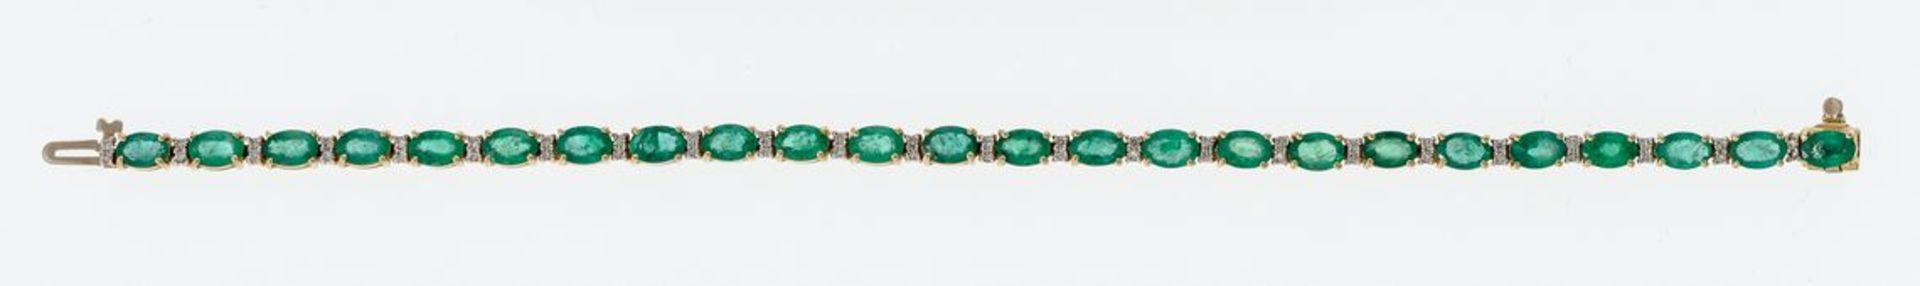 Smaragd-ArmbandGG, 585. 24 mit Smaragden von 6 x 4 mm und je zwei kl. Brillanten besetzte Glieder.